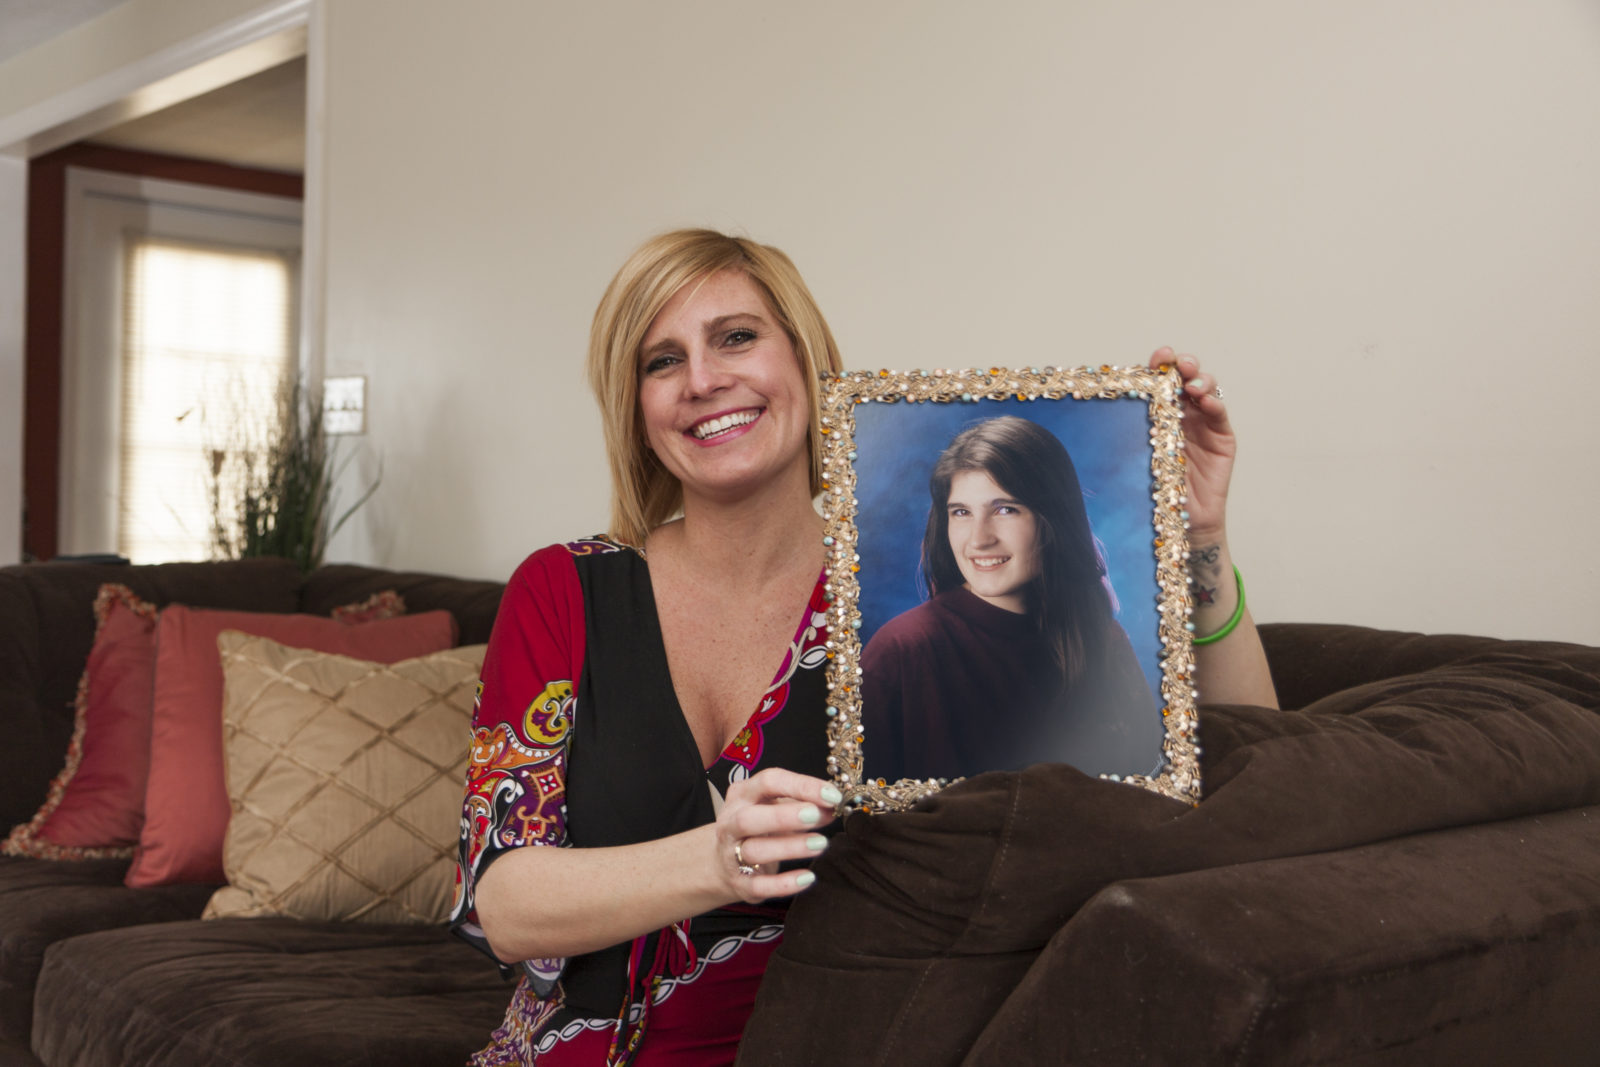 Kimberly Noelle Canterbury The Girl Who Helped Others Lifeline Of Ohio